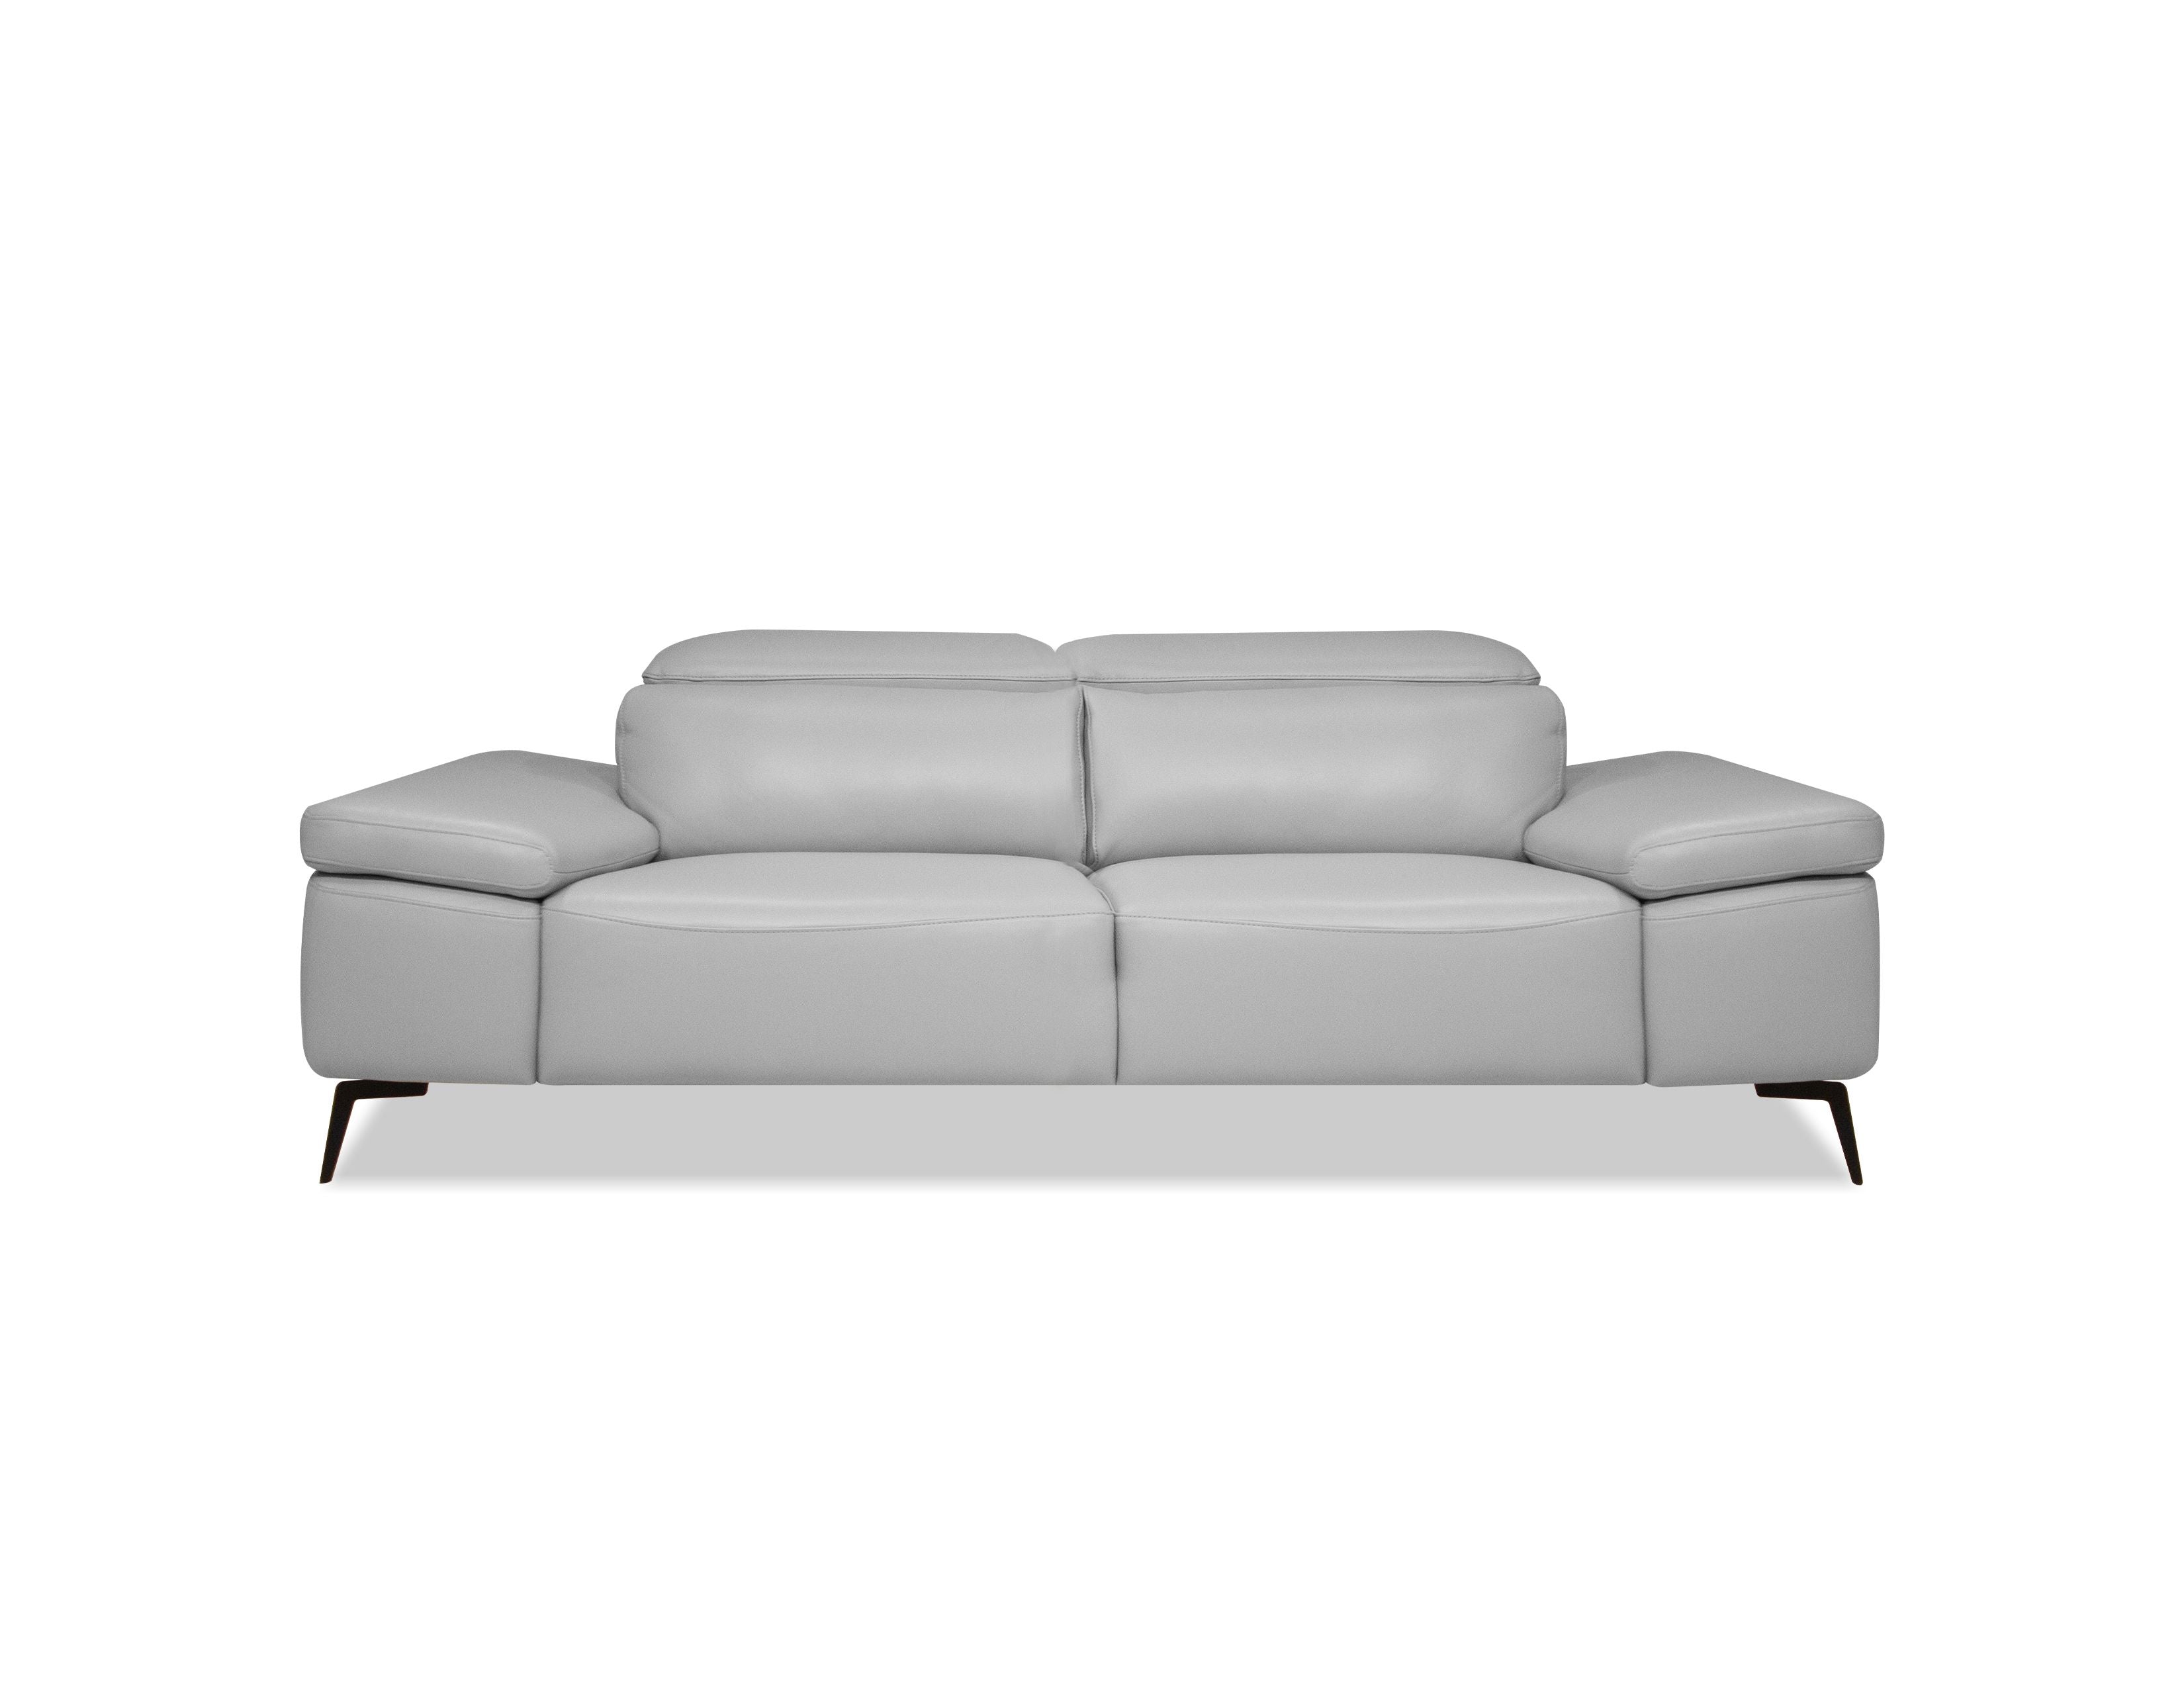 CAMELLO Leather Sofa in Silver